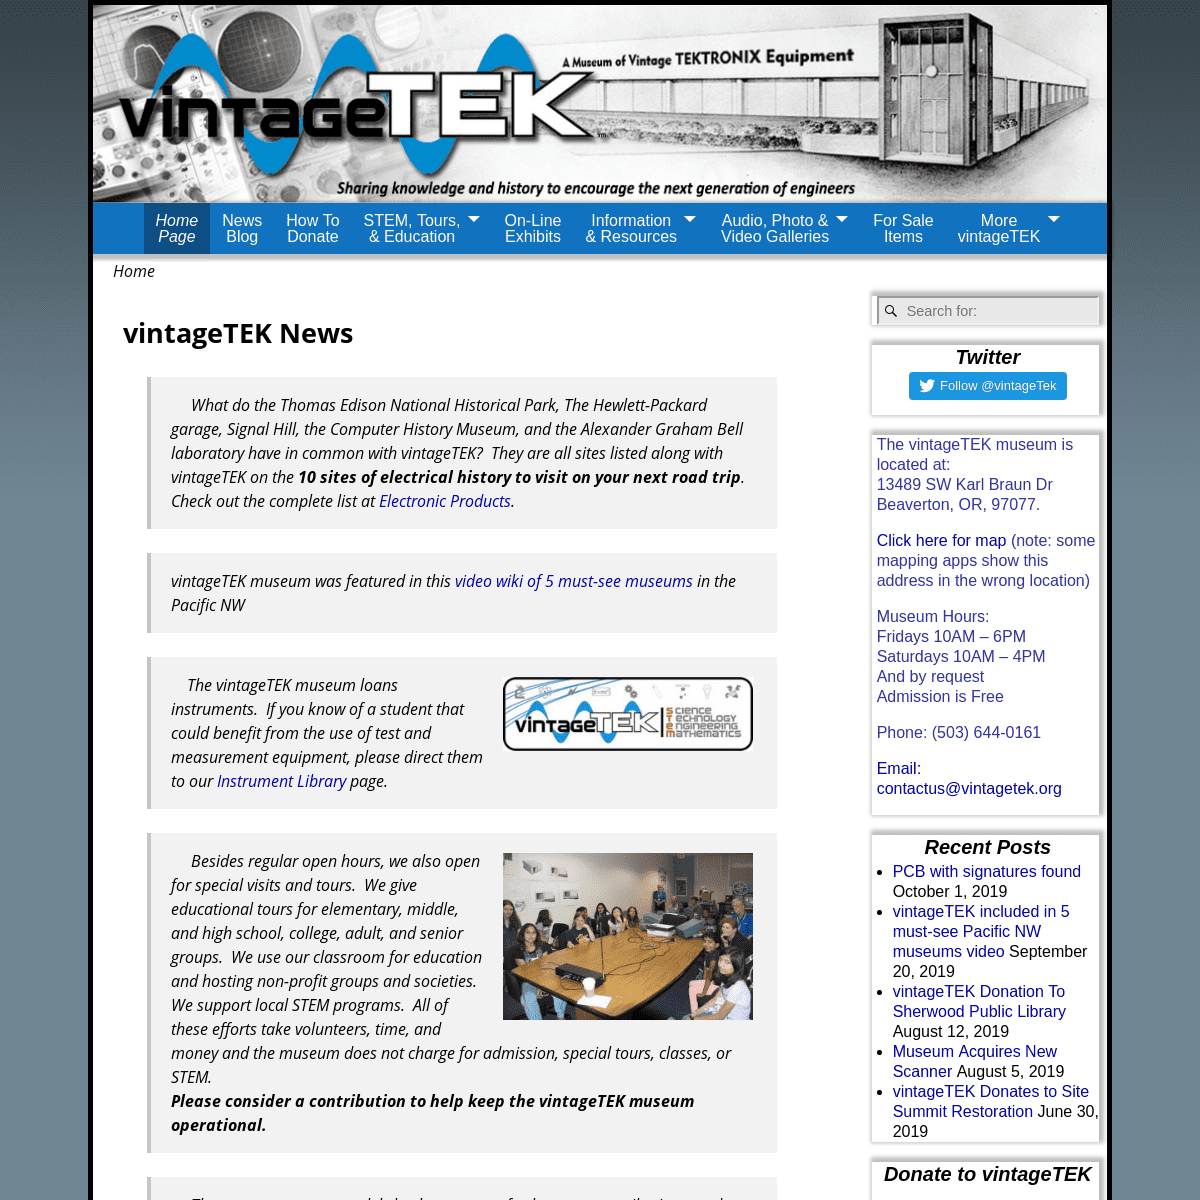 A complete backup of vintagetek.org